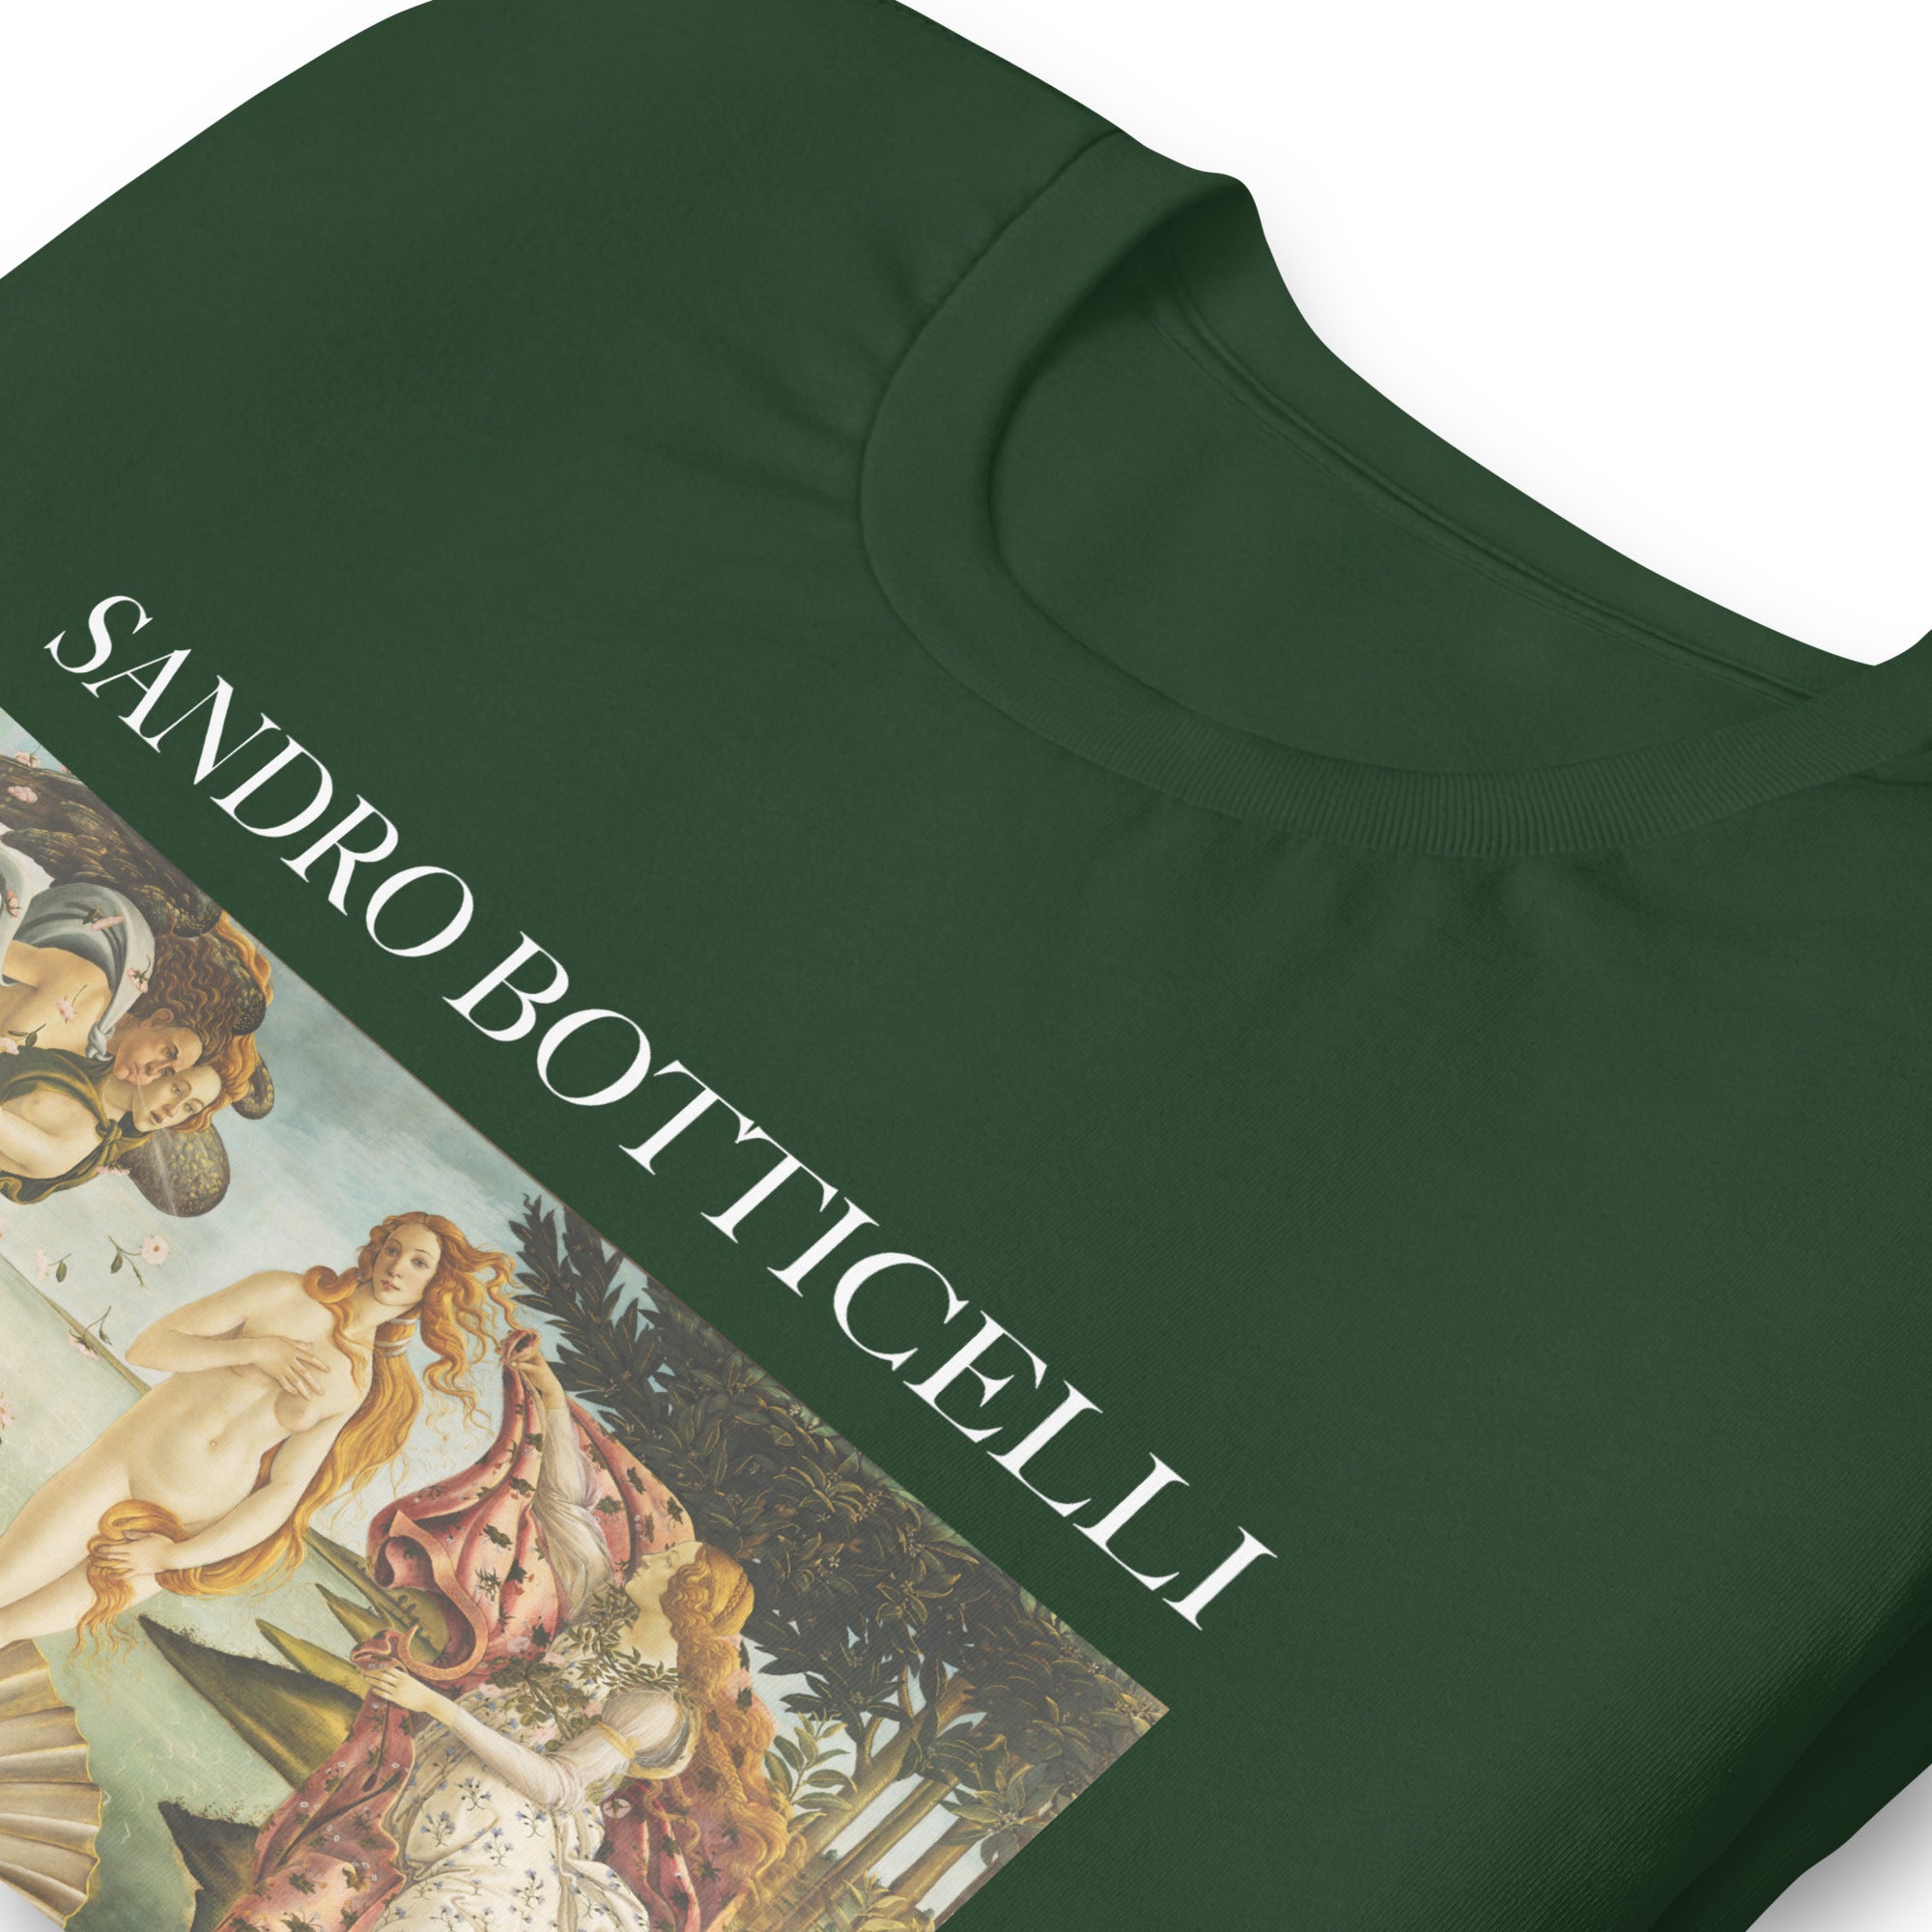 T-Shirt mit berühmtem Gemälde „Die Geburt der Venus“ von Sandro Botticelli | Unisex-T-Shirt im klassischen Kunststil